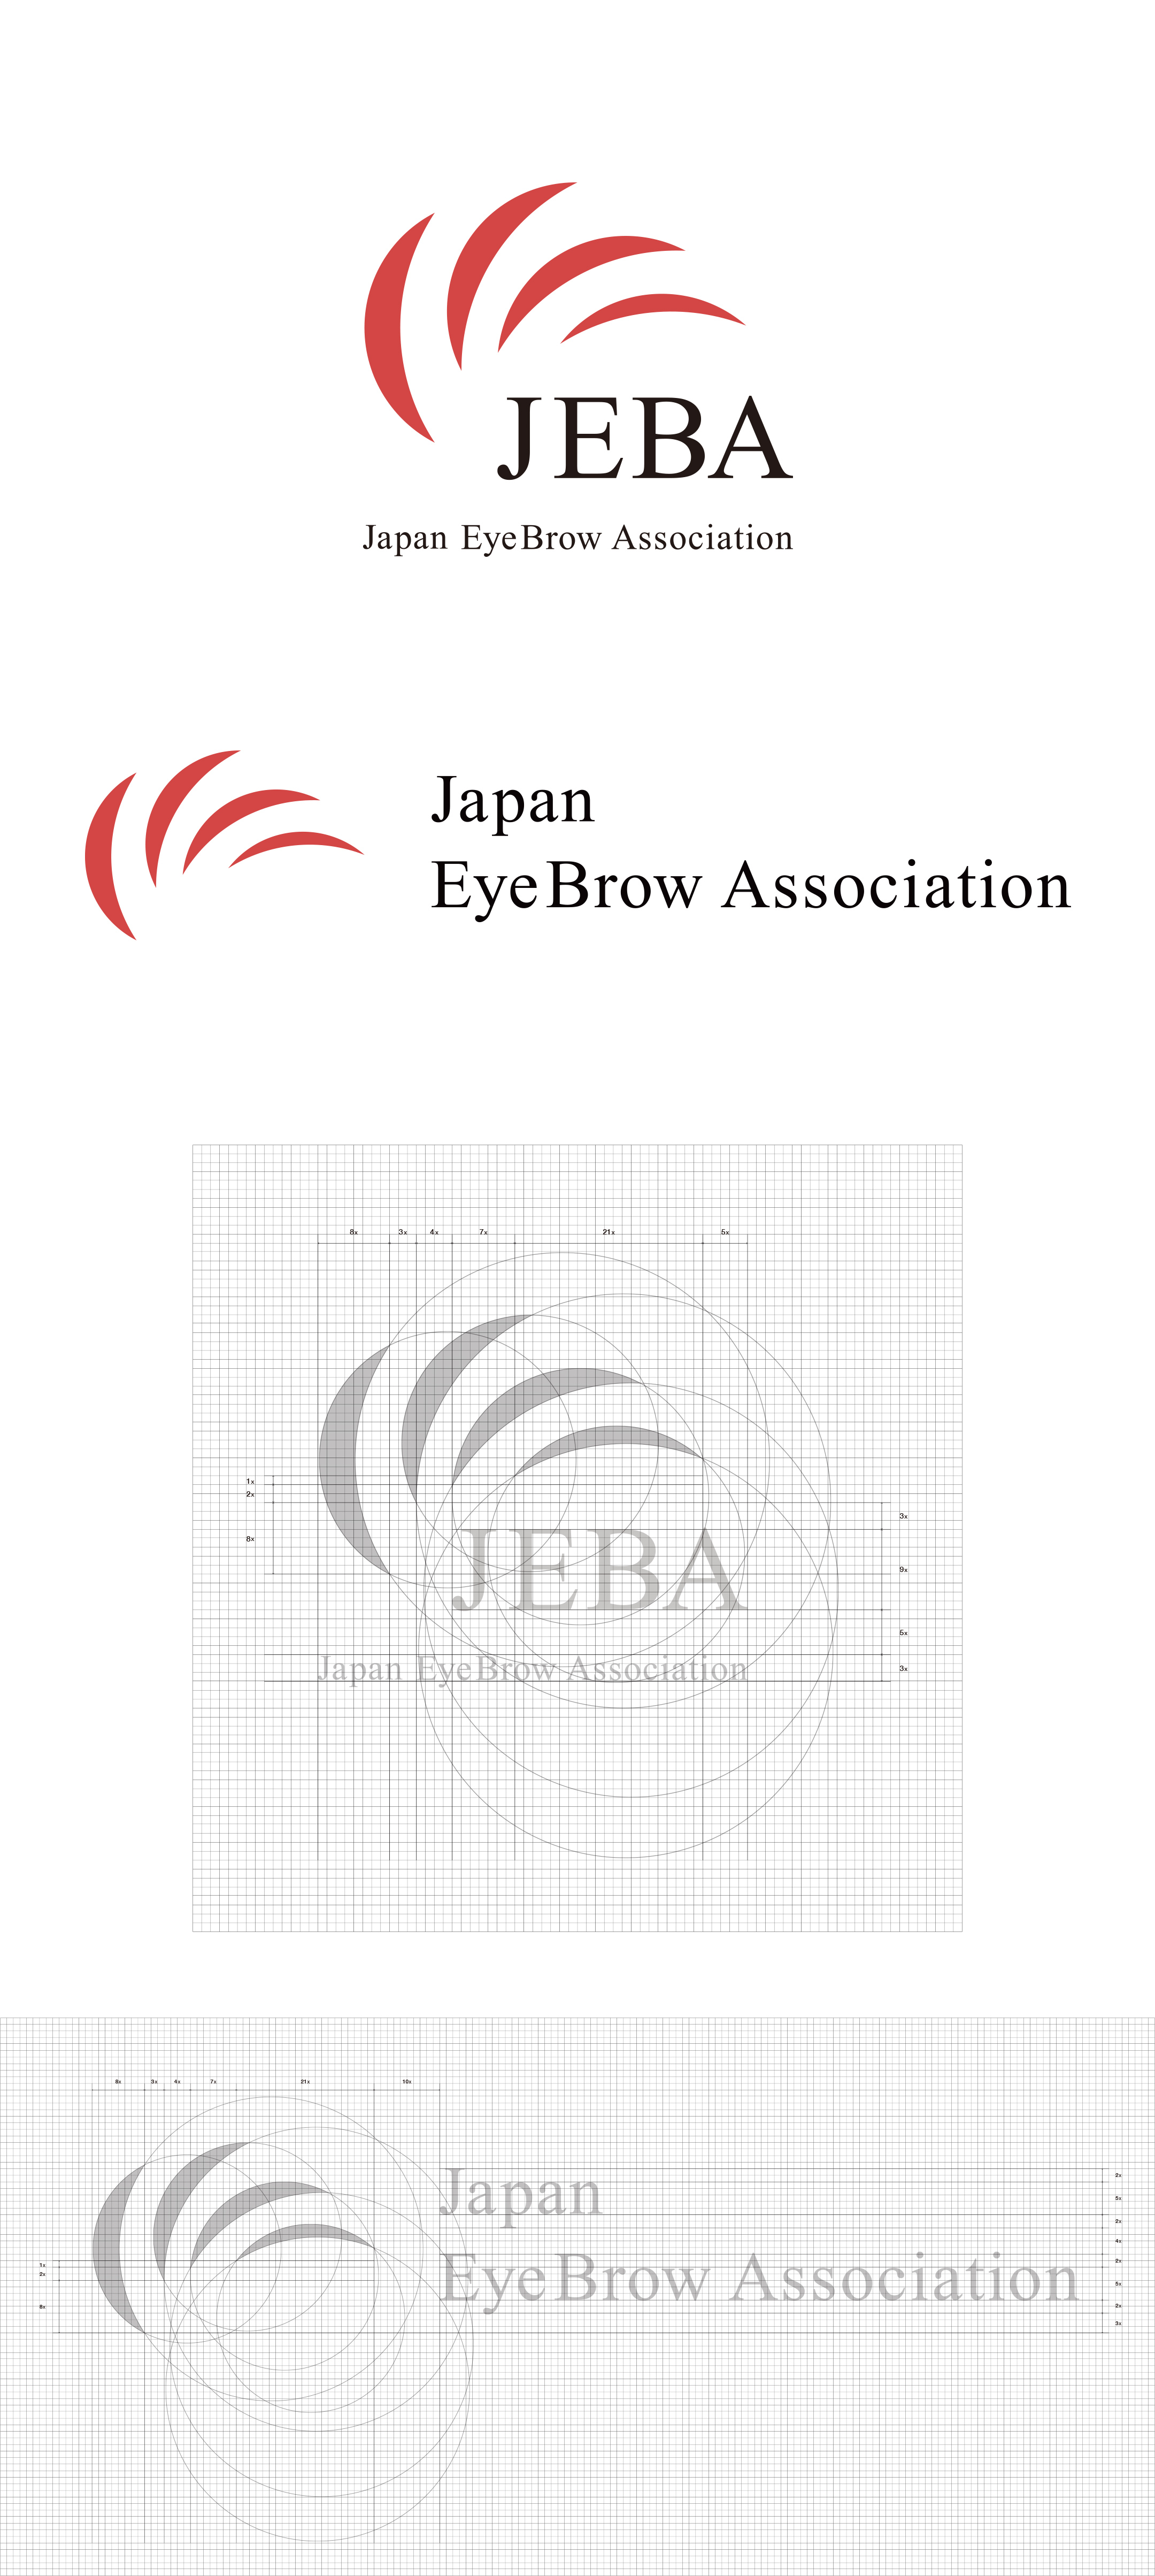 一般社団法人ジャパンアイブロウ協会 / Japan Eyebrow Association